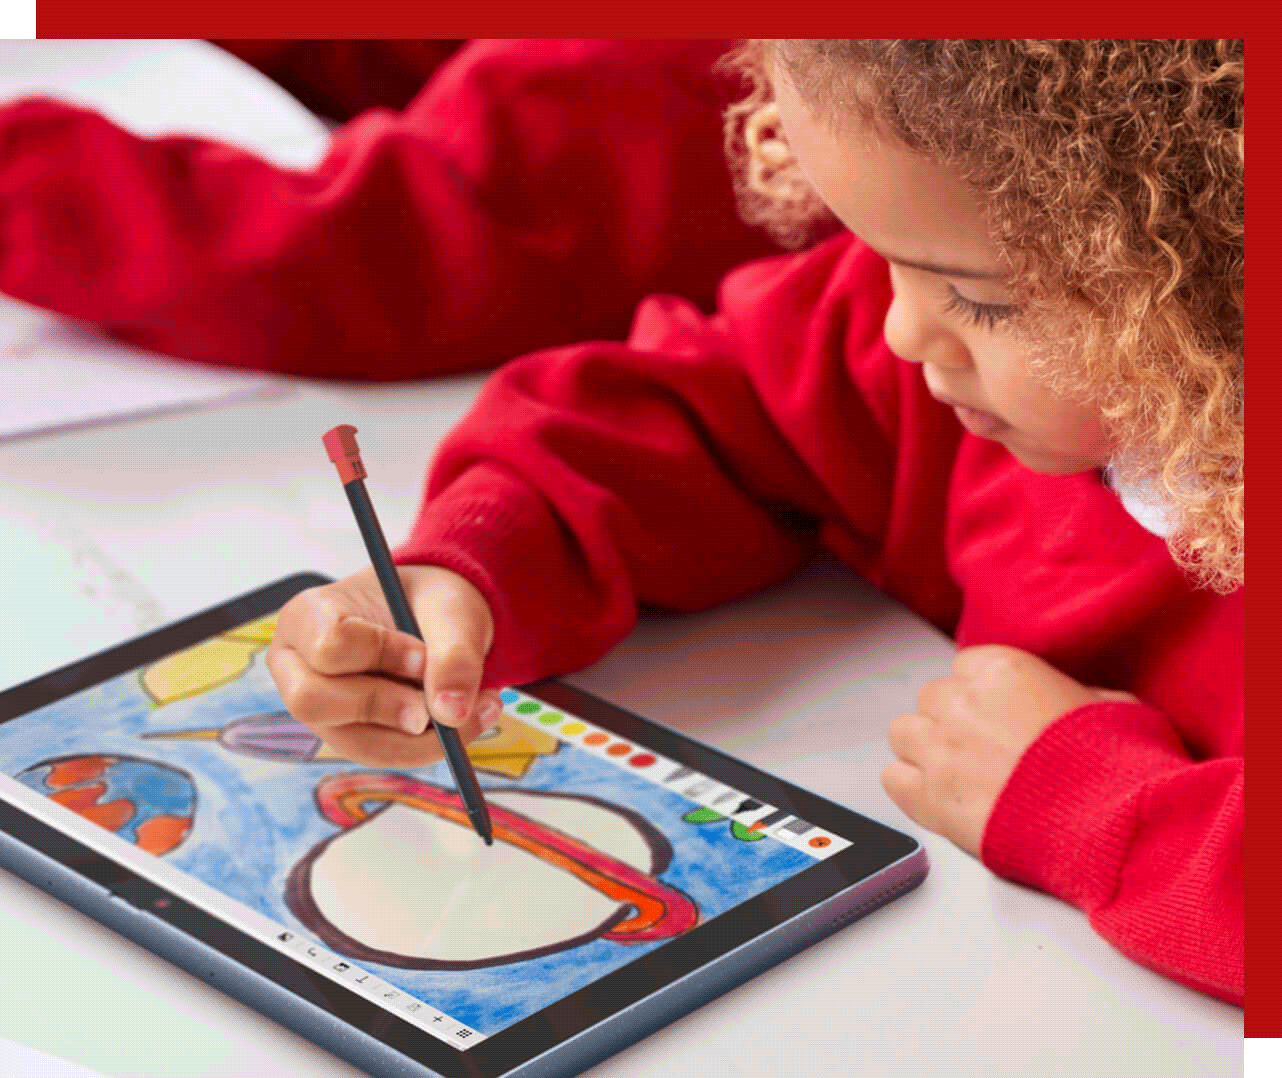 Bambino che usa uno stilo per disegnare su un tablet Lenovo 